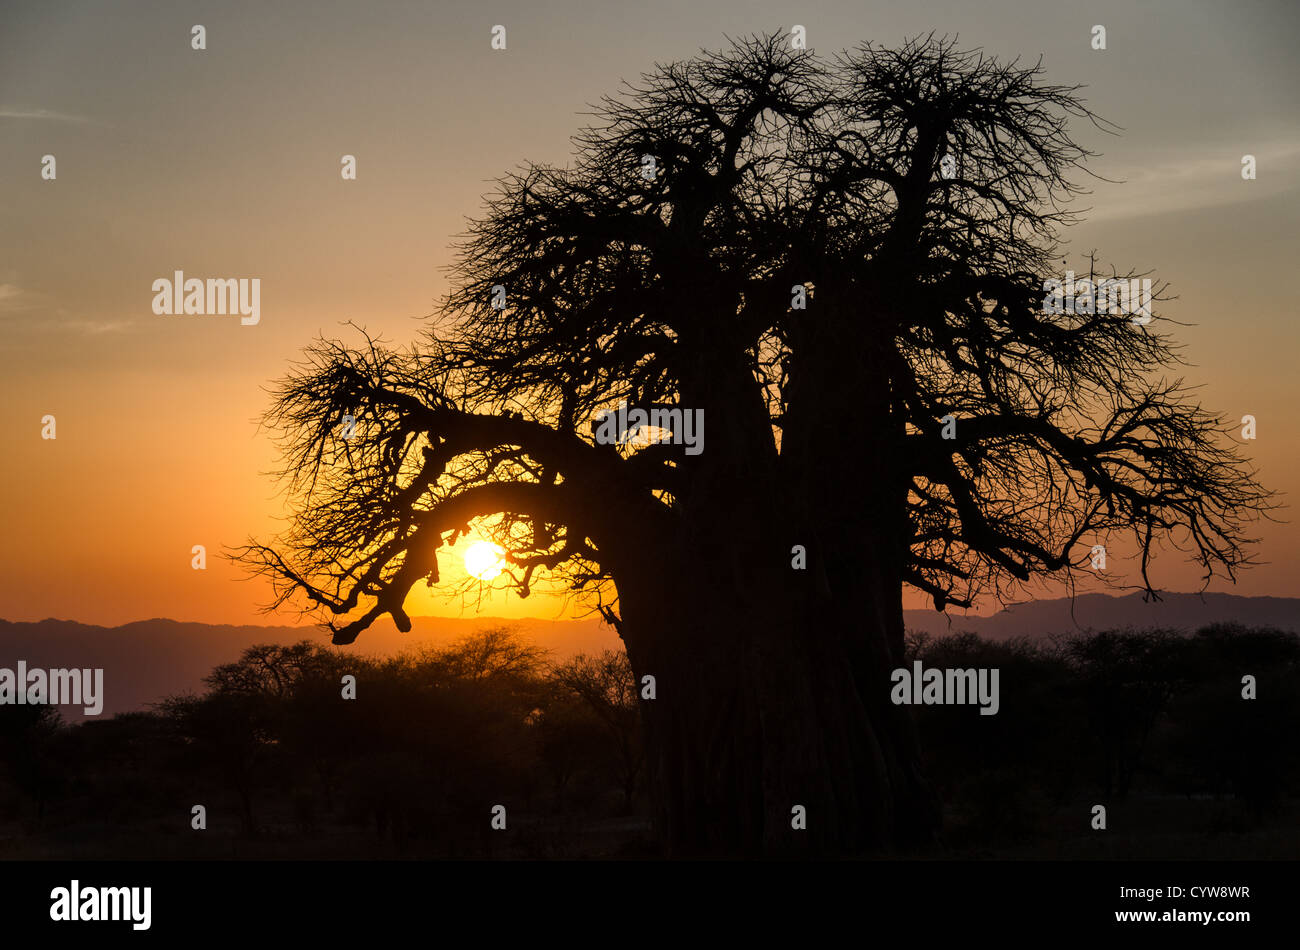 Der Tarangire National Park, Tansania - ein Golden Sunset Frames der Umriss eines Baobab Baum in der Tarangire National Park im Norden von Tansania, nicht weit von den Ngorongoro Krater und die Serengeti. Stockfoto